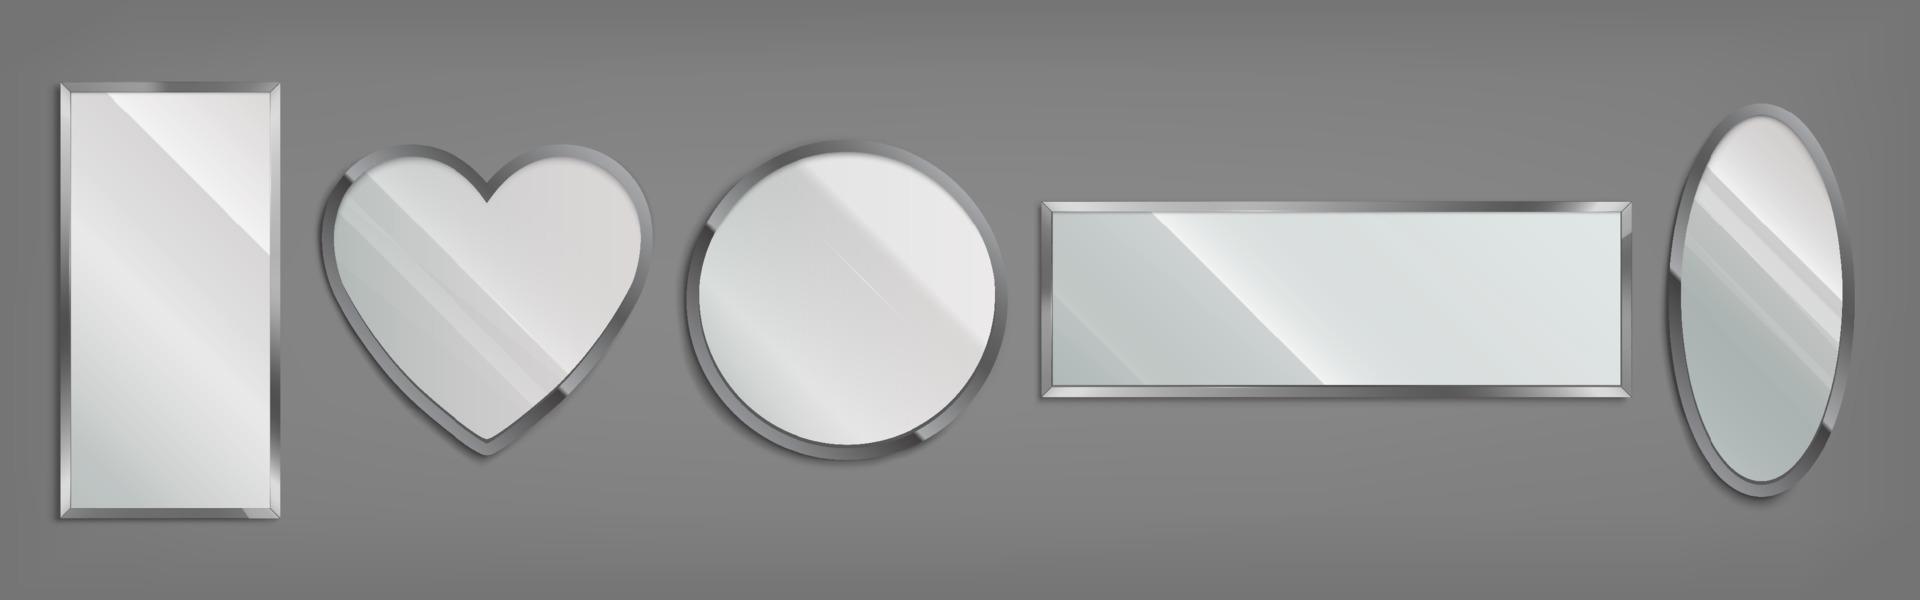 espejos en marco de metal diferentes formas vector